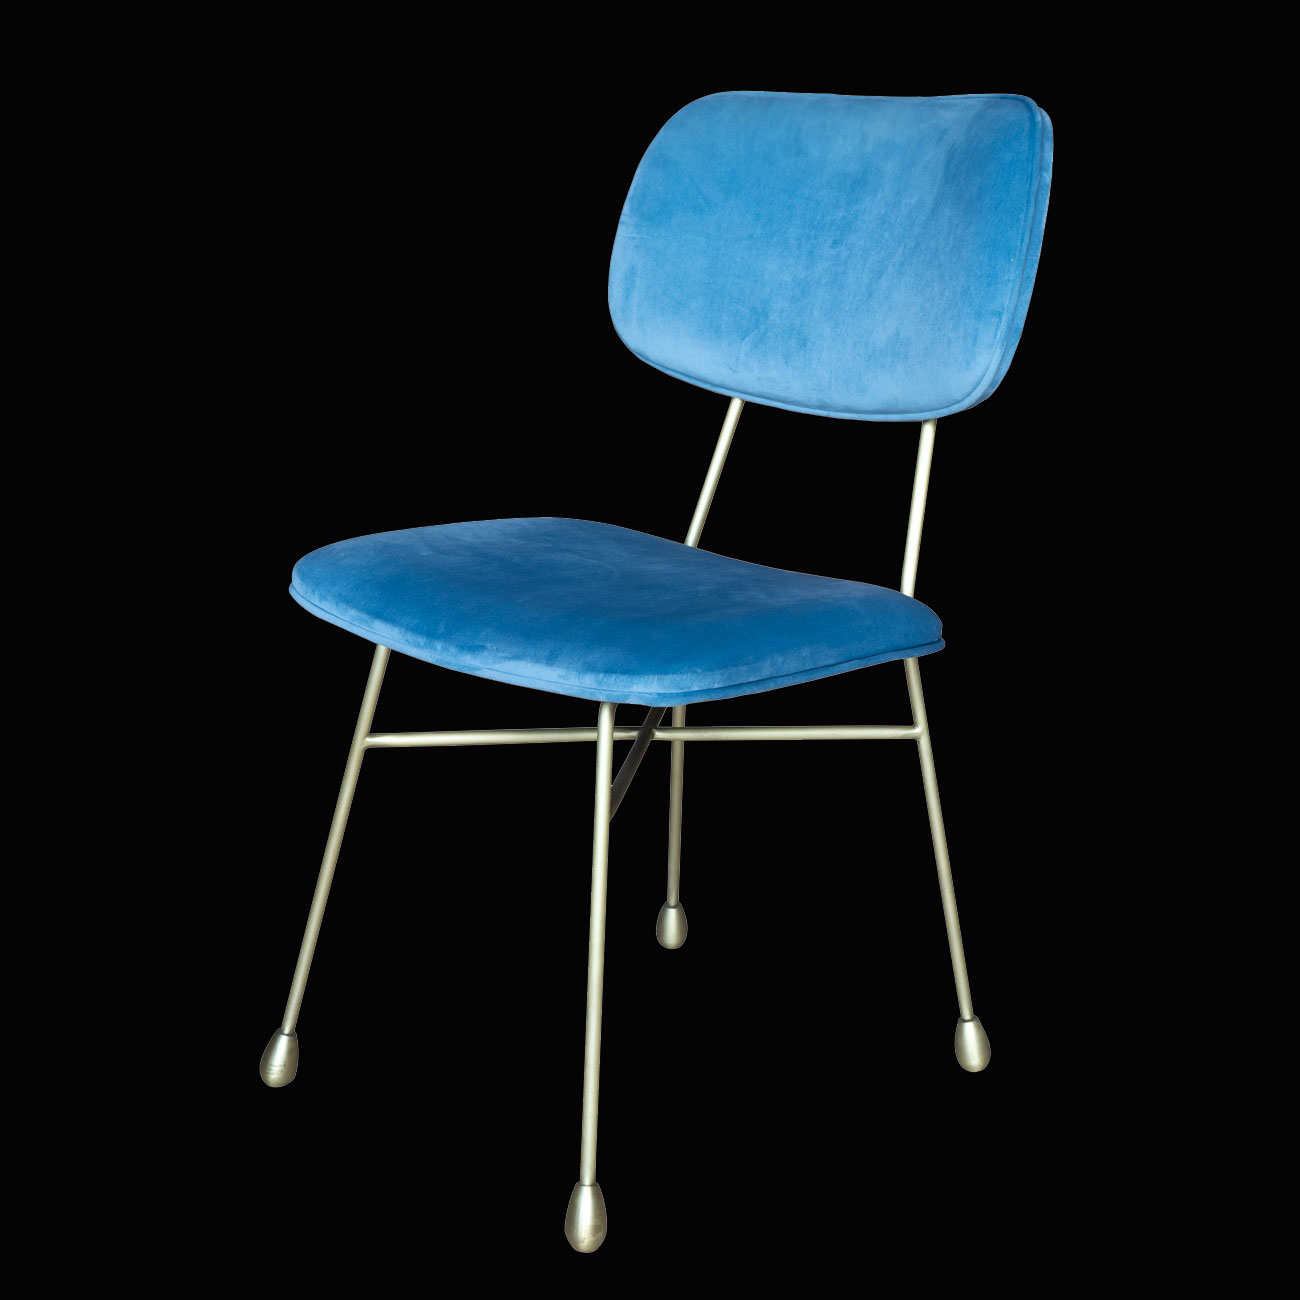 tel sandalye modelleri, metal sandalye modelleri, sandalye tasarımı